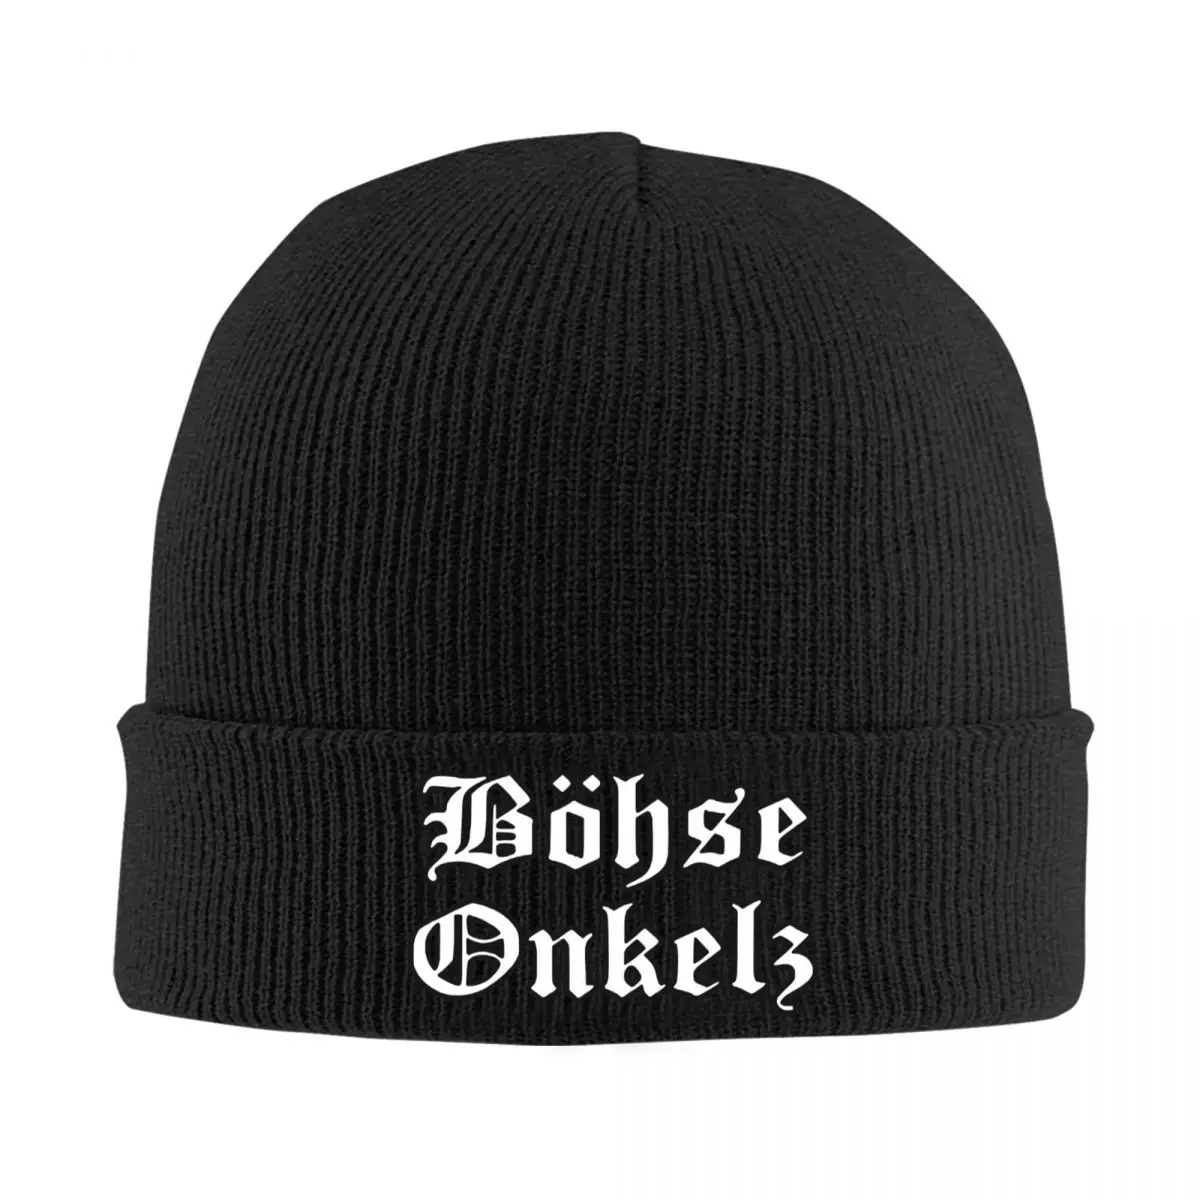 

Немецкая Шапка-бини Rock Bohse Onkelz, зимняя теплая шапка унисекс, мужская вязаная шапка, лыжные шапочки для активного отдыха, облегающие шапки